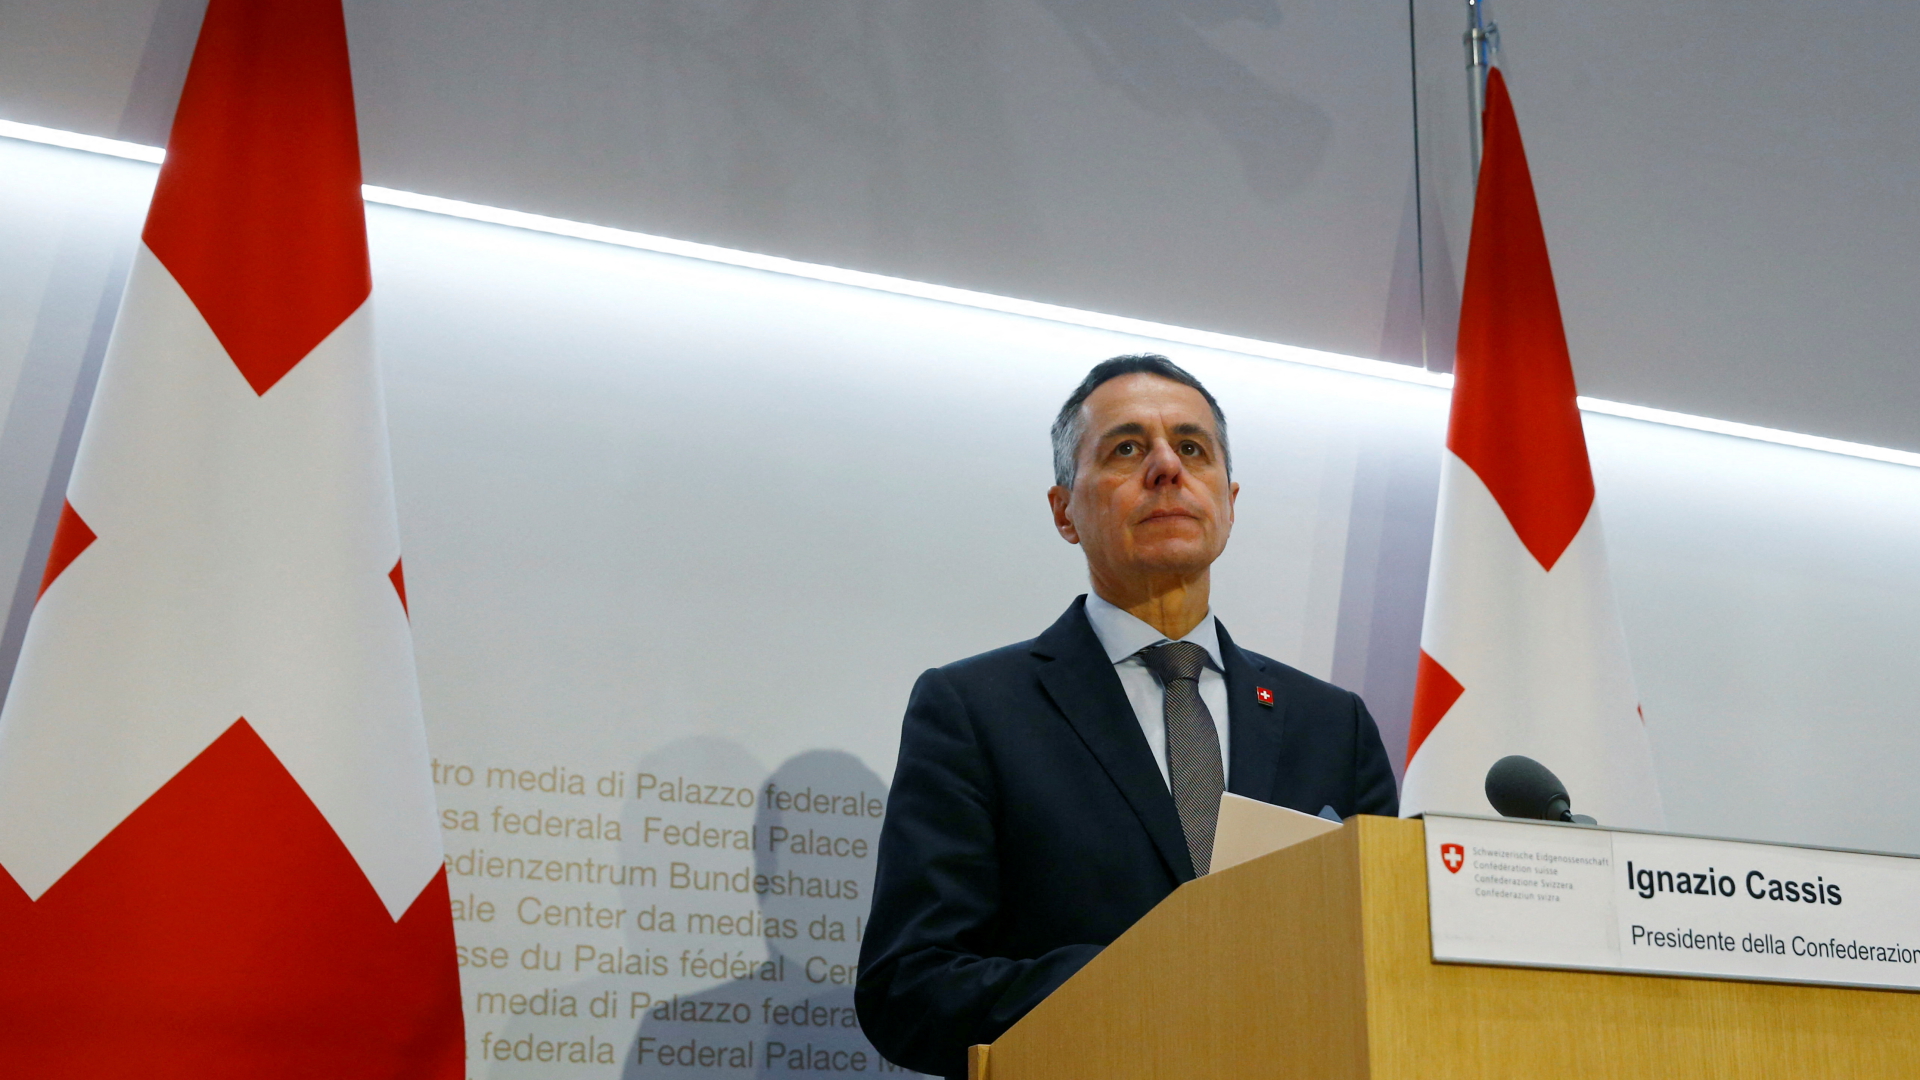 Der Schweizer Bundespräsident Ignazio Cassis spricht auf einer Pressekonferenz in Bern.